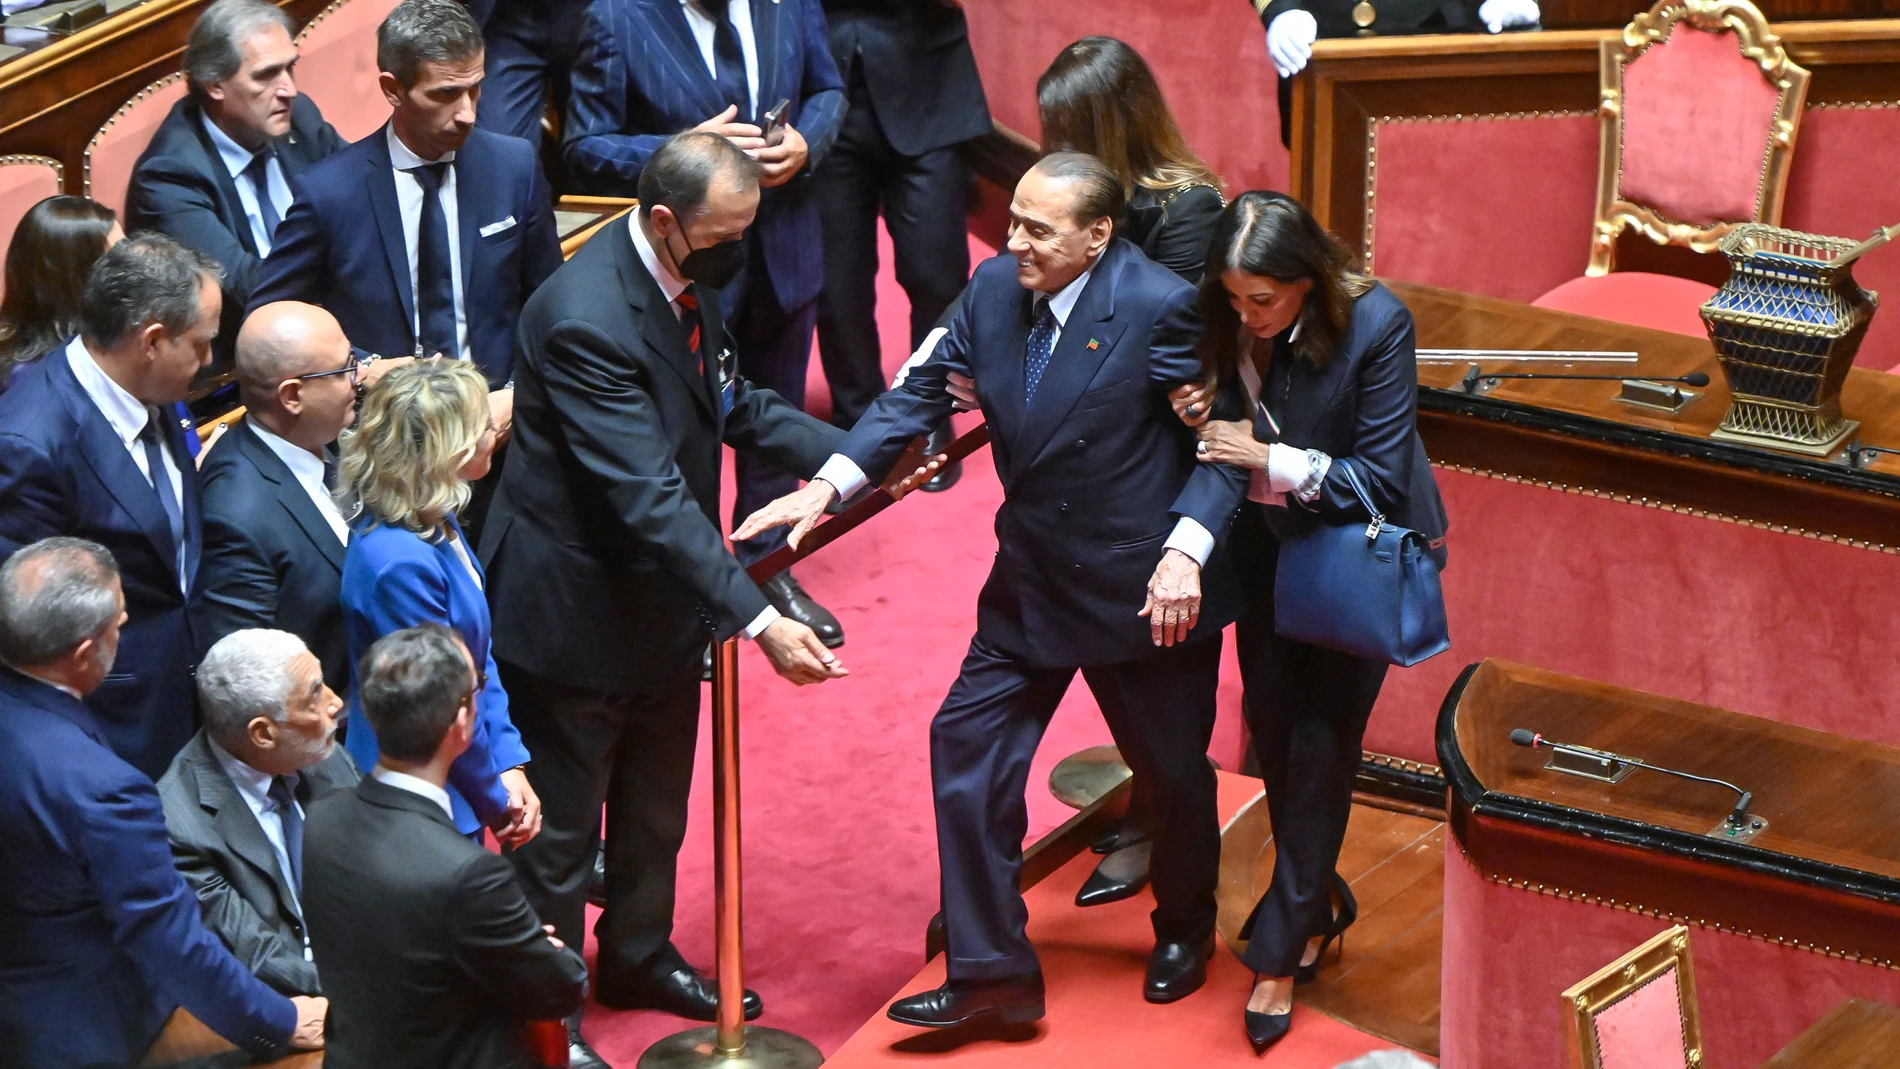 Los ujieres del Senado italiano ayudan ayer a Silvio Berlusconi a llegar a su escaño, en la Cámara Alta